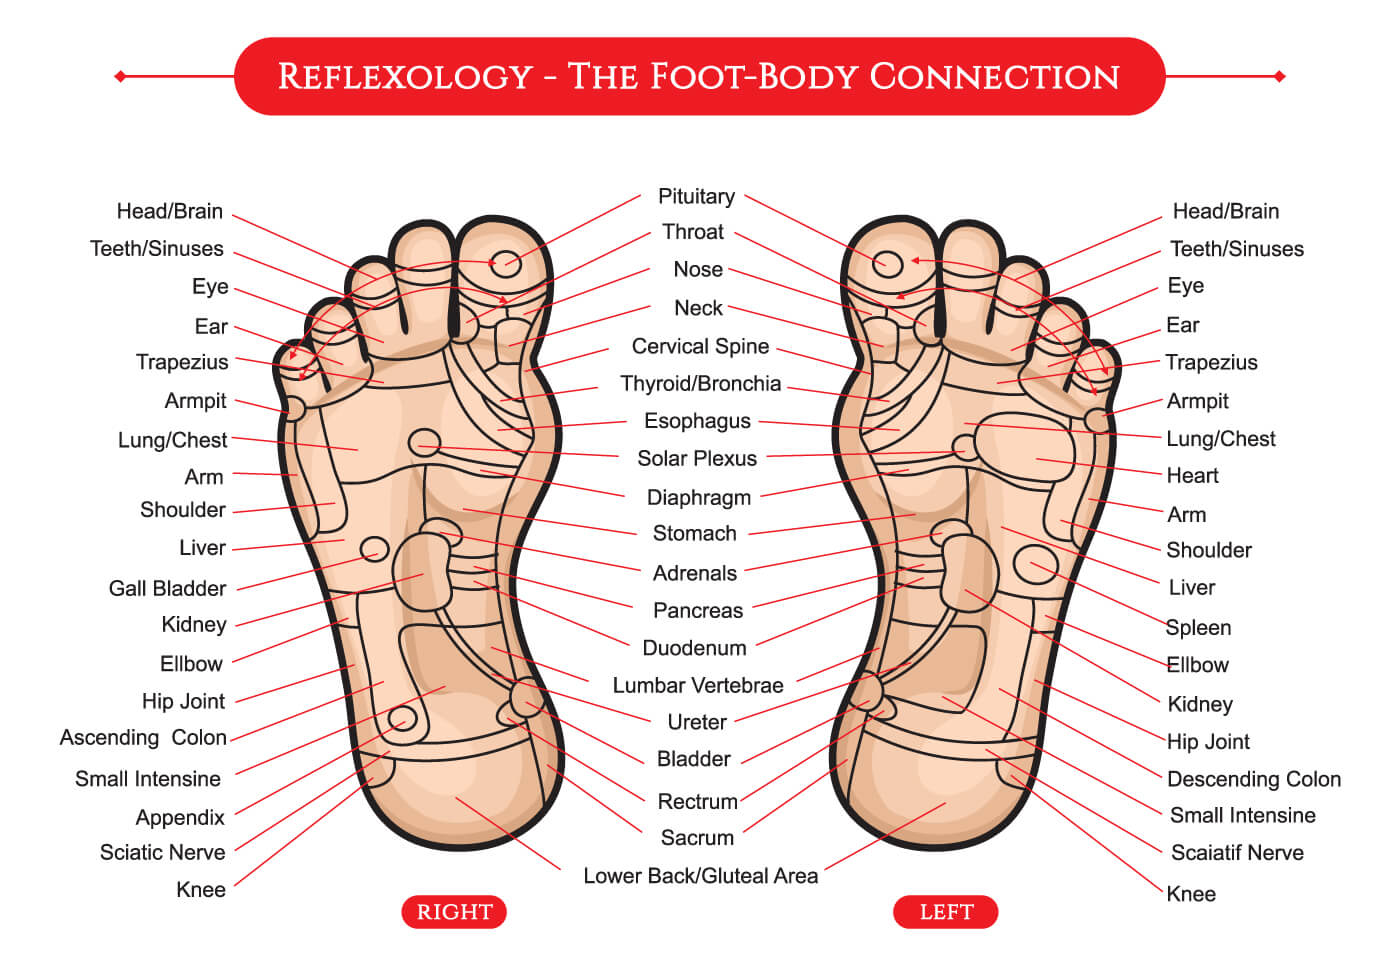 Knee Reflexology Foot Chart